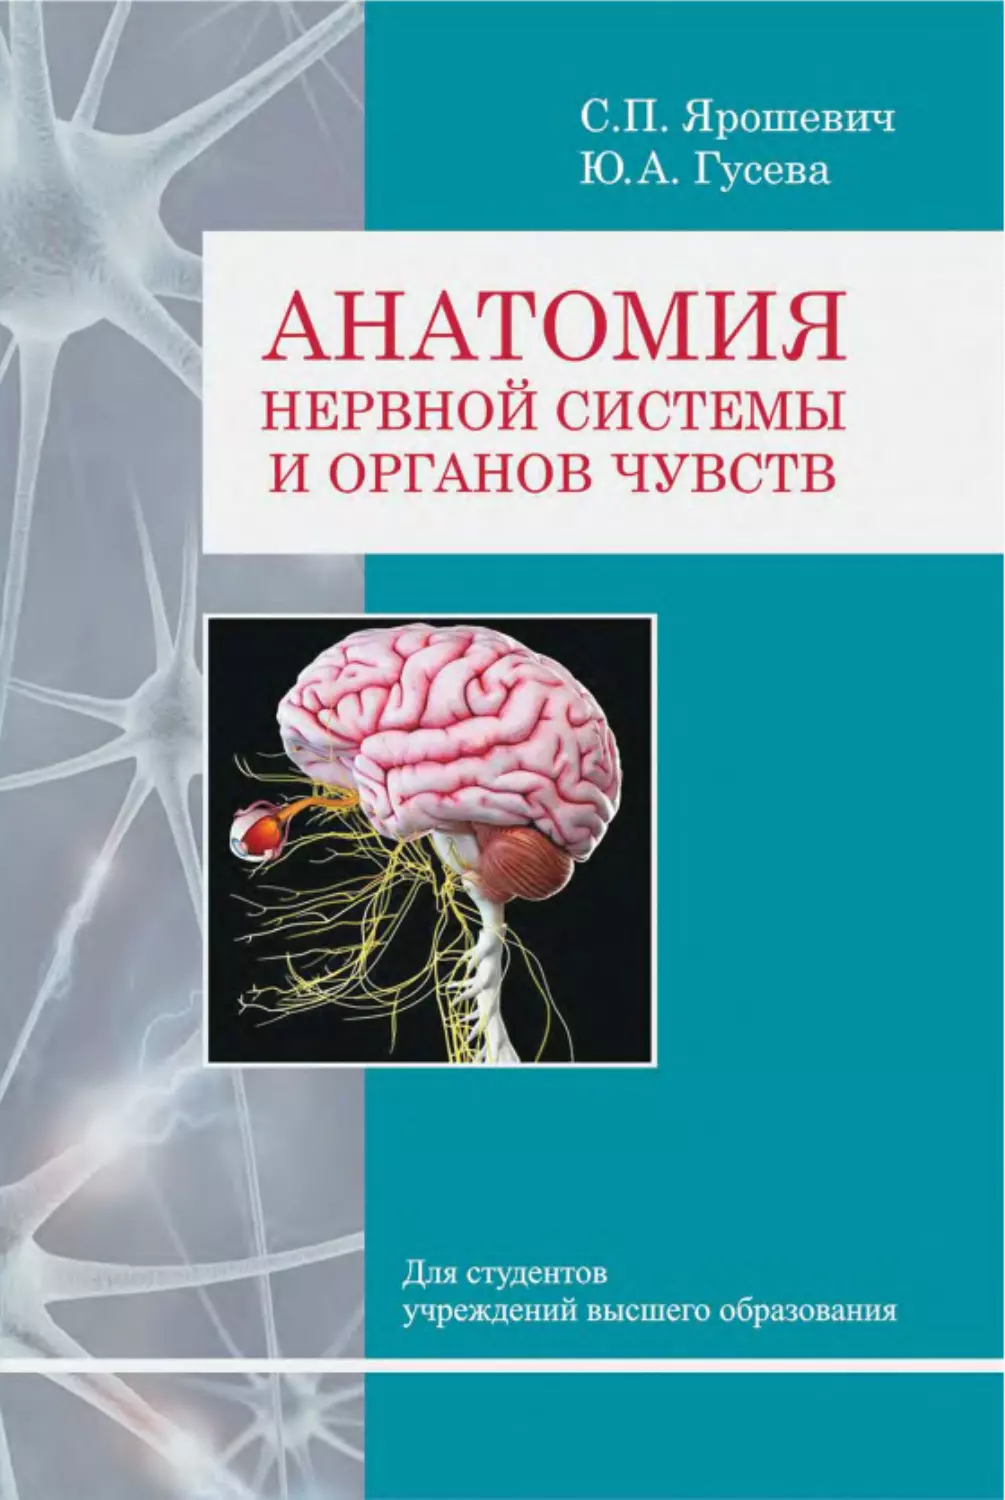 ﻿С. П. Ярошевич, Ю. А. Гусева. Анатомия нервной системы и органов чувст